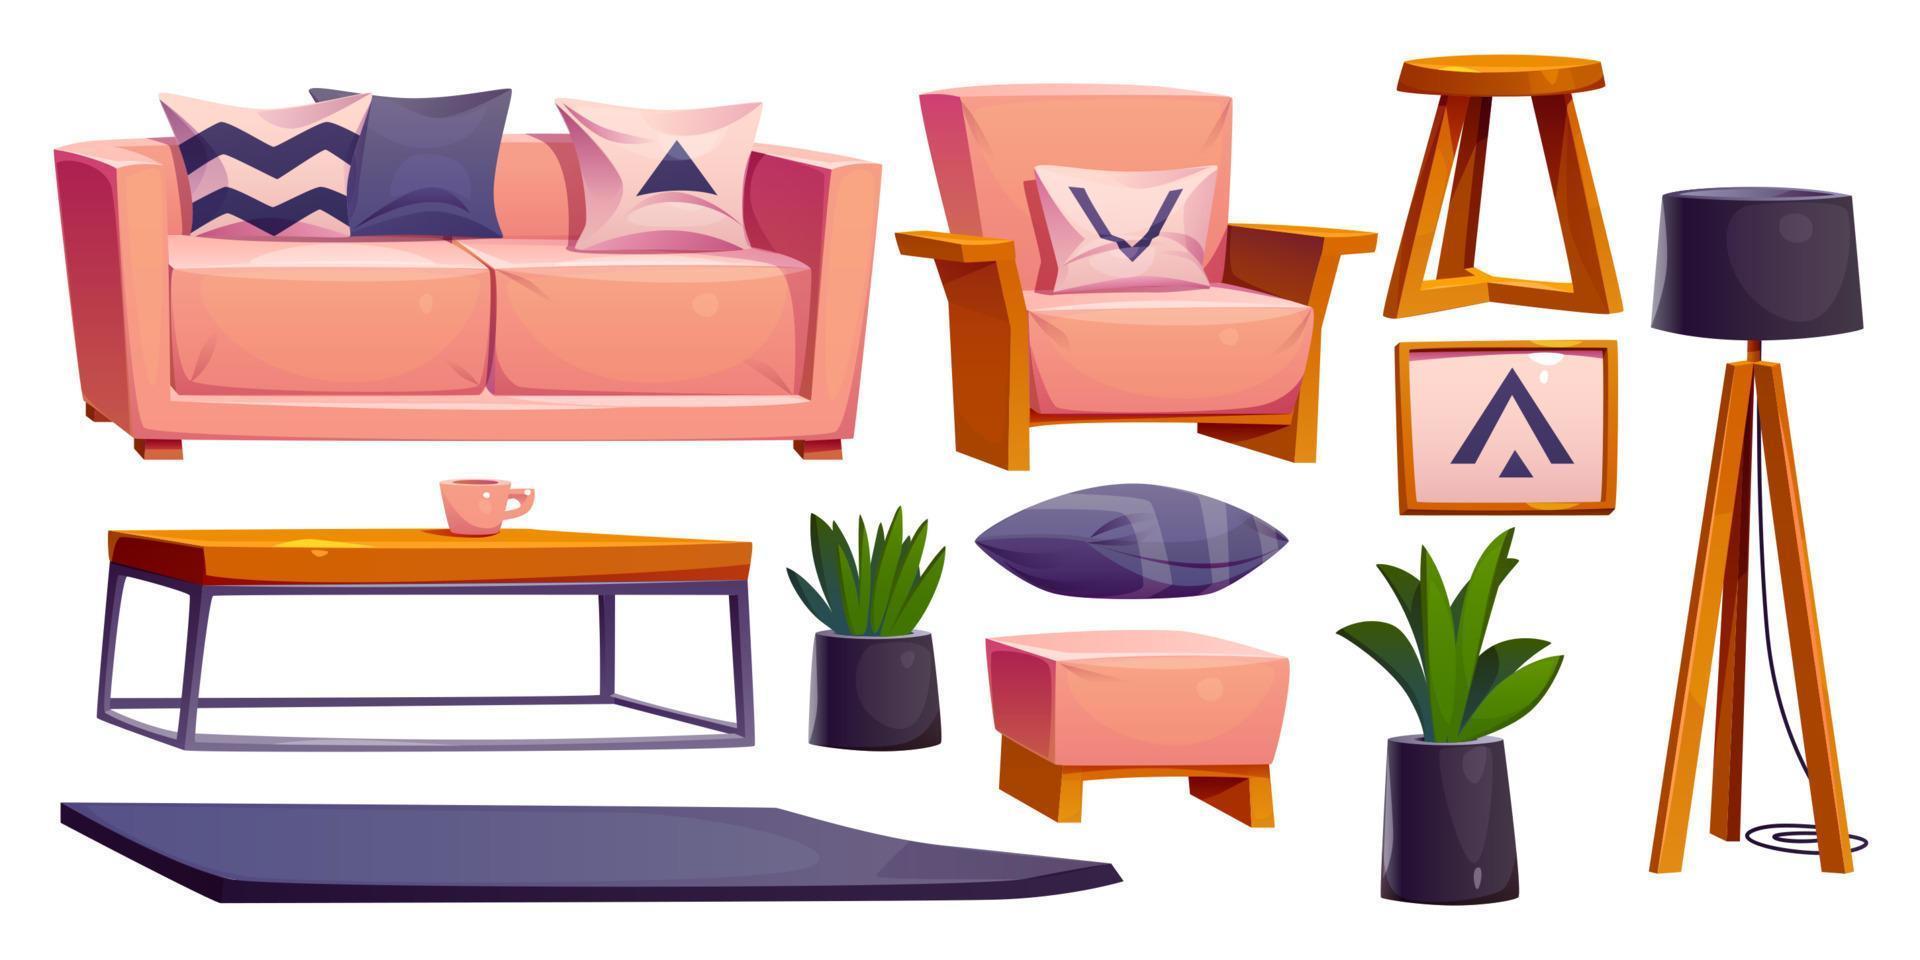 Cartoon scandinavian furniture for living room vector